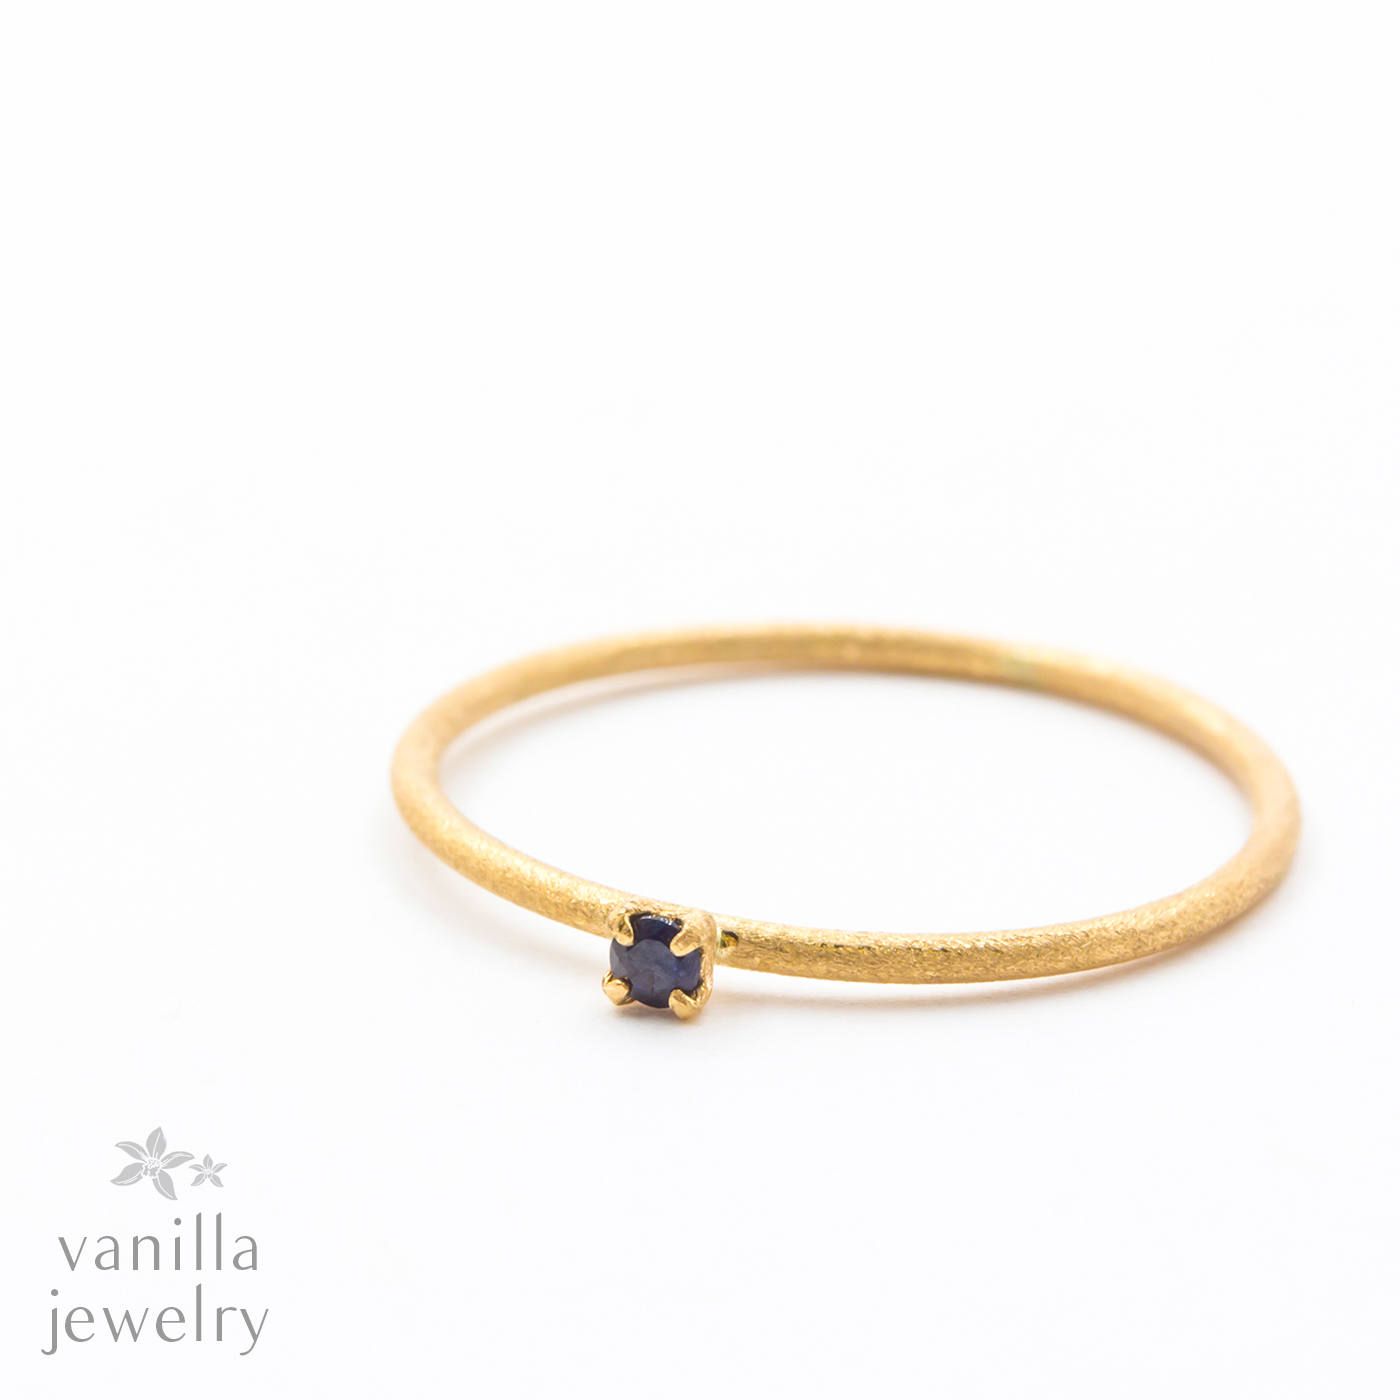 誕生石一覧 / 9月 サファイア (Sapphire) 青玉 通販 | vanilla jewelry